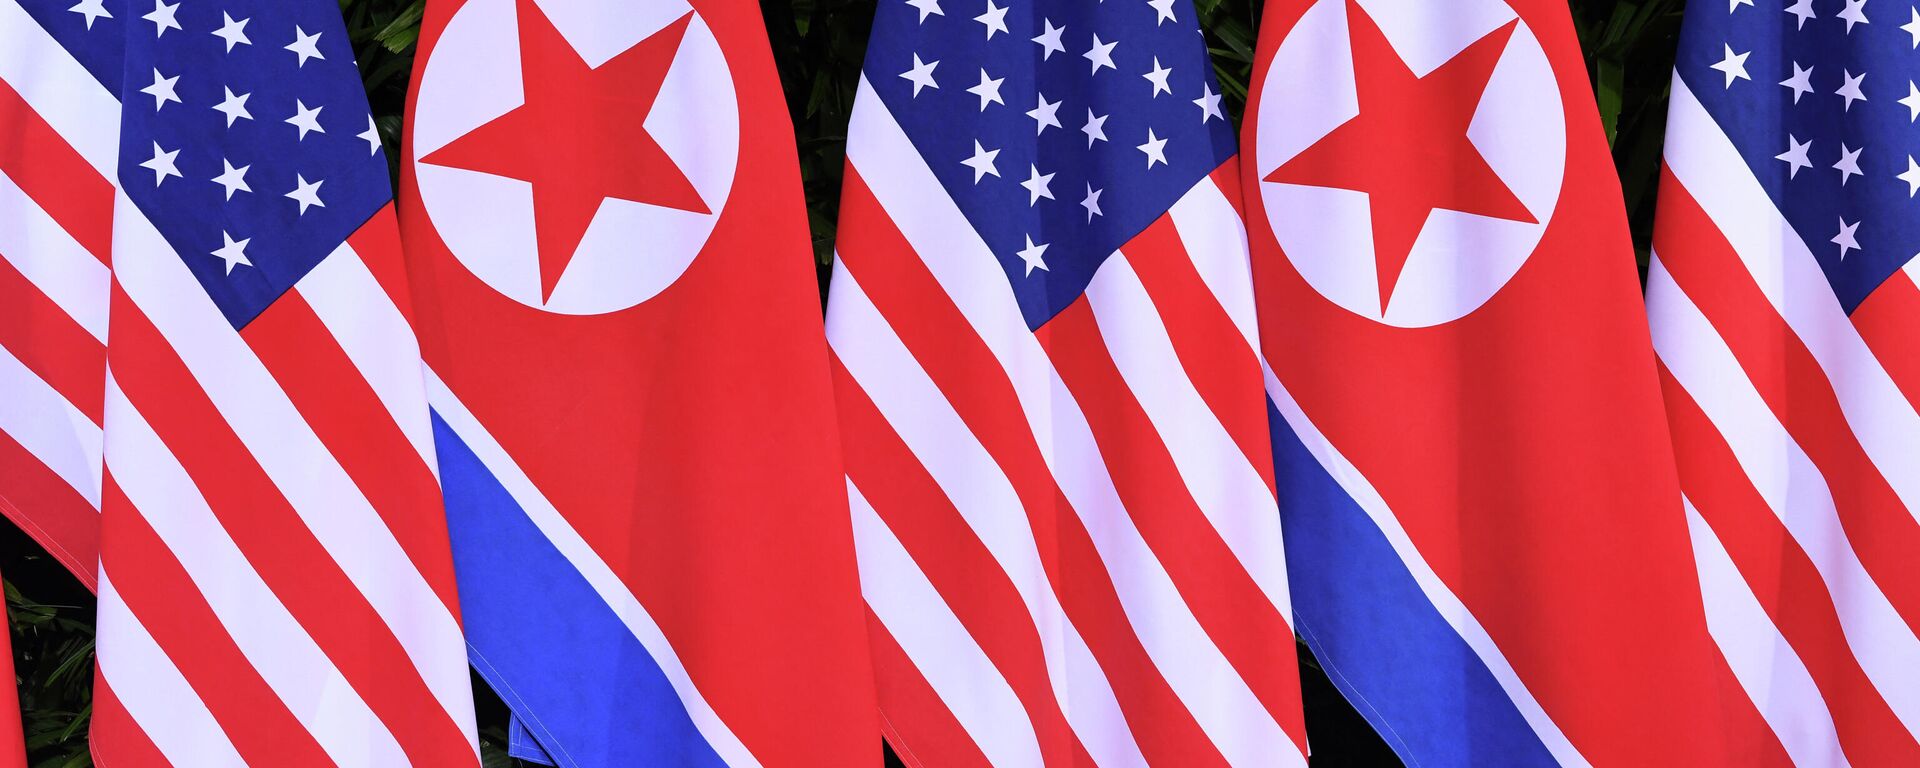 Banderas de EEUU y de Corea del Norte - Sputnik Mundo, 1920, 15.03.2021